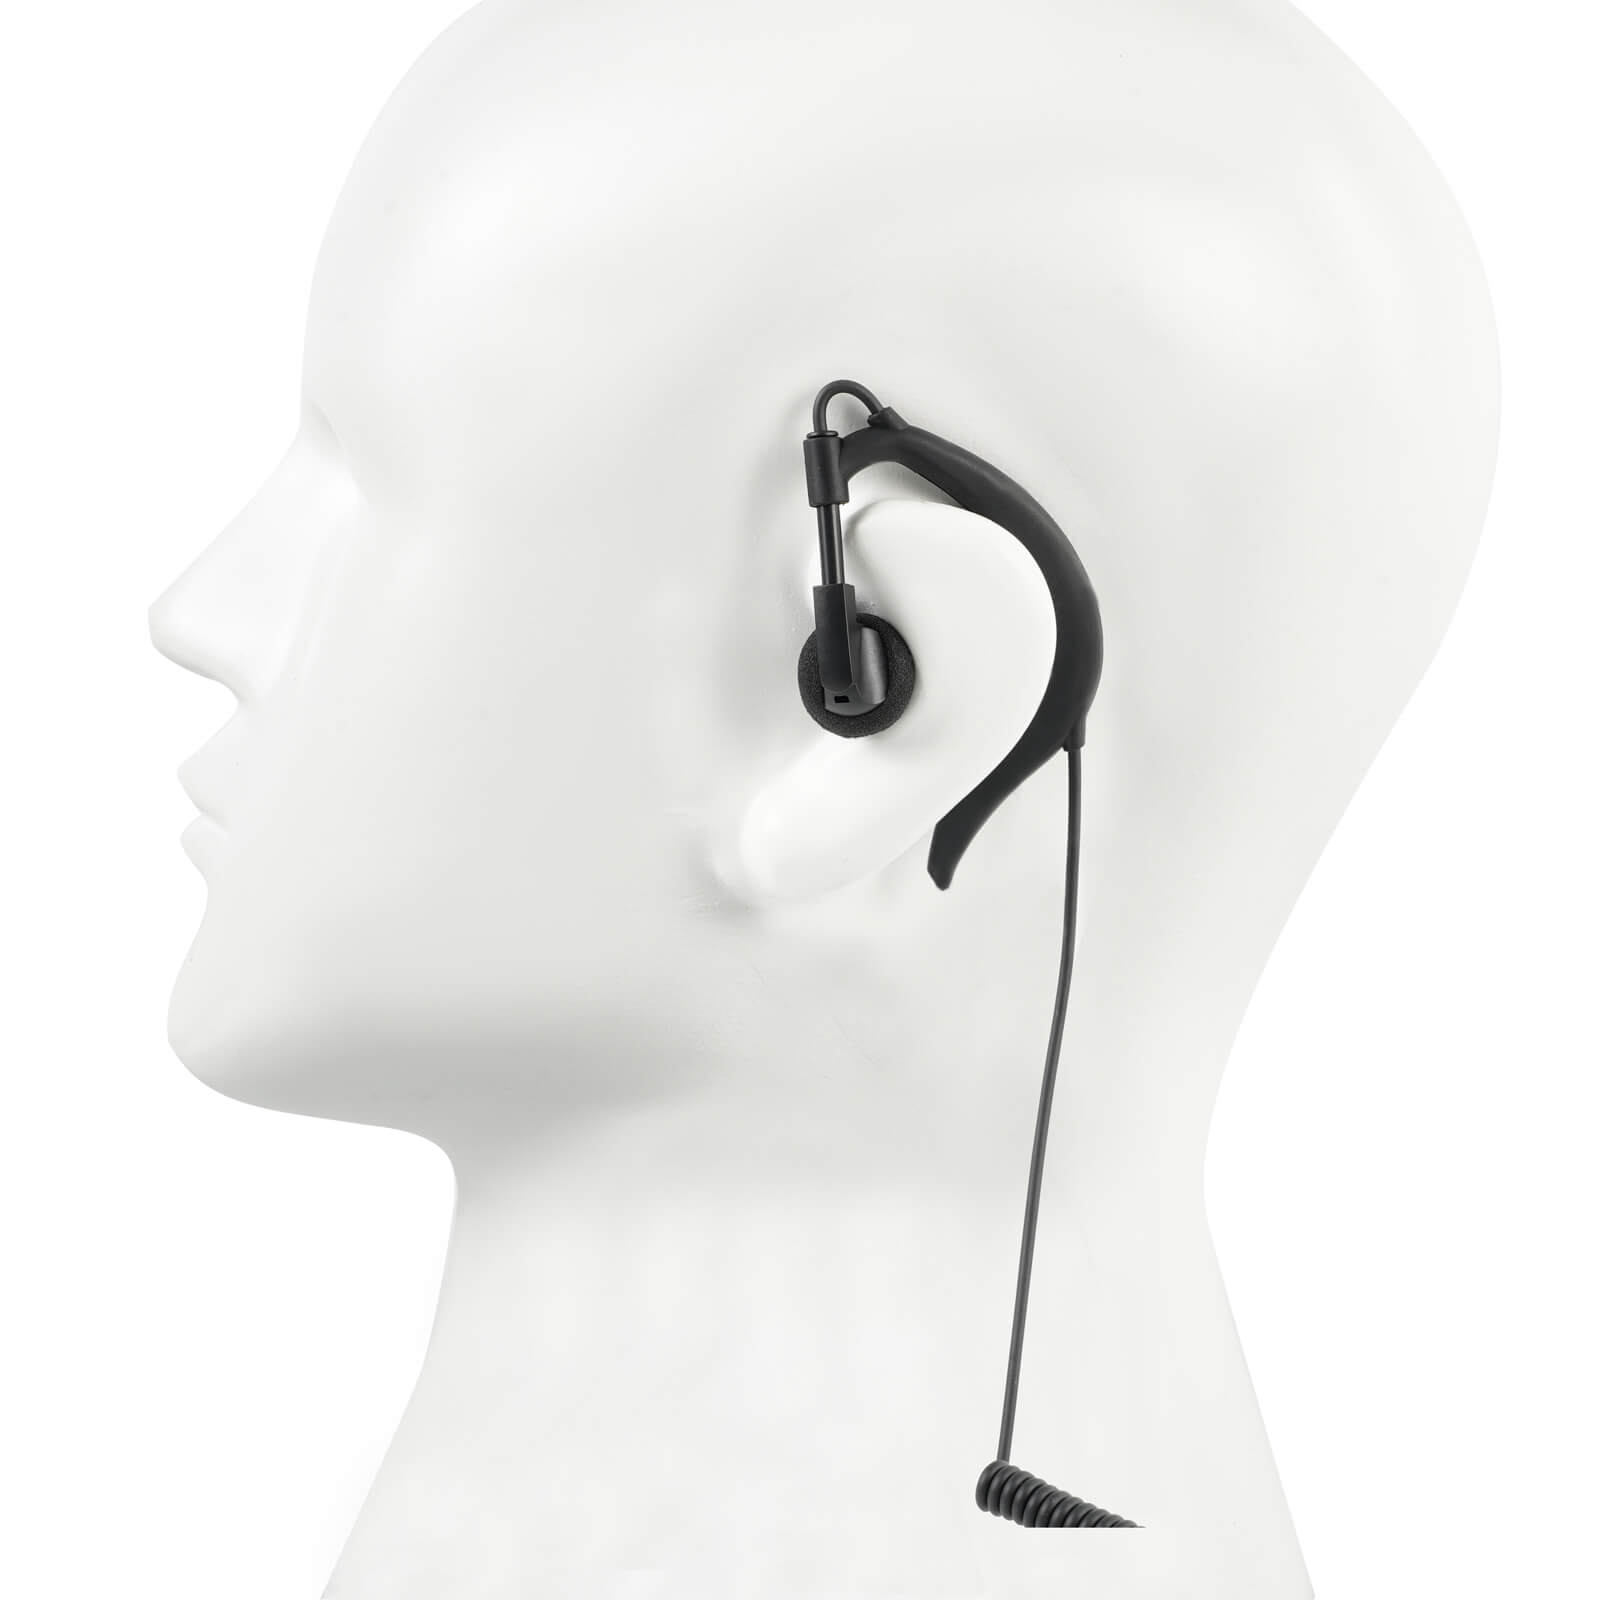 earhook earpiece